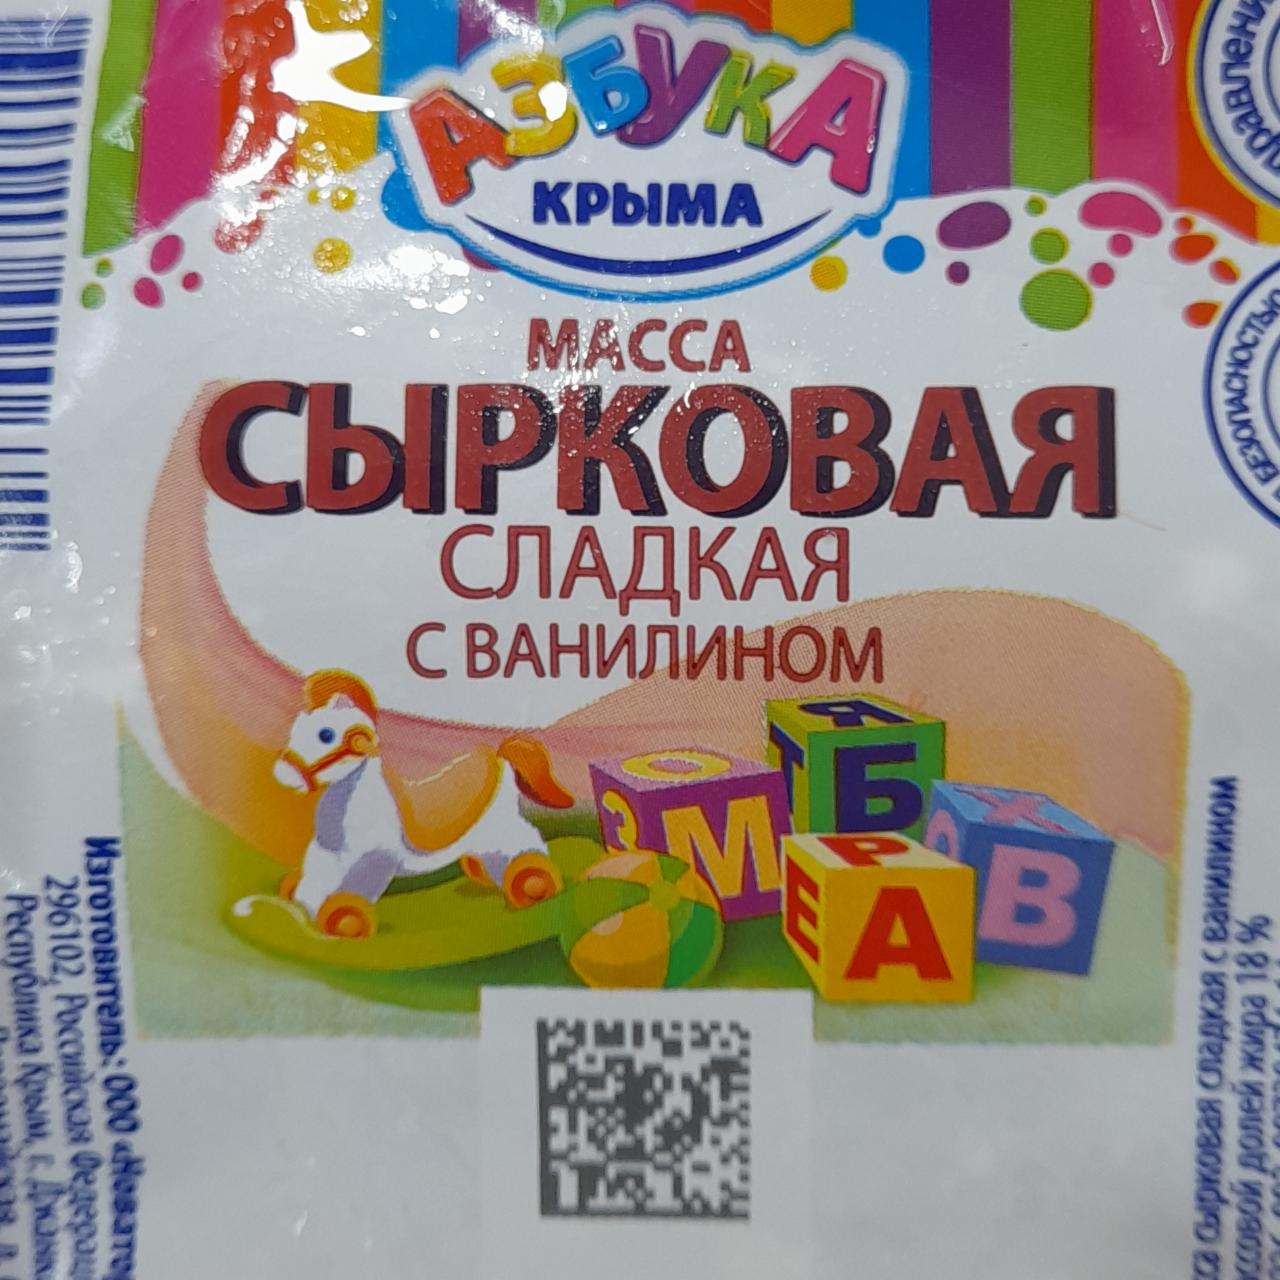 Фото - Масса сырковая сладкая с ванилином 18% Азбука Крыма